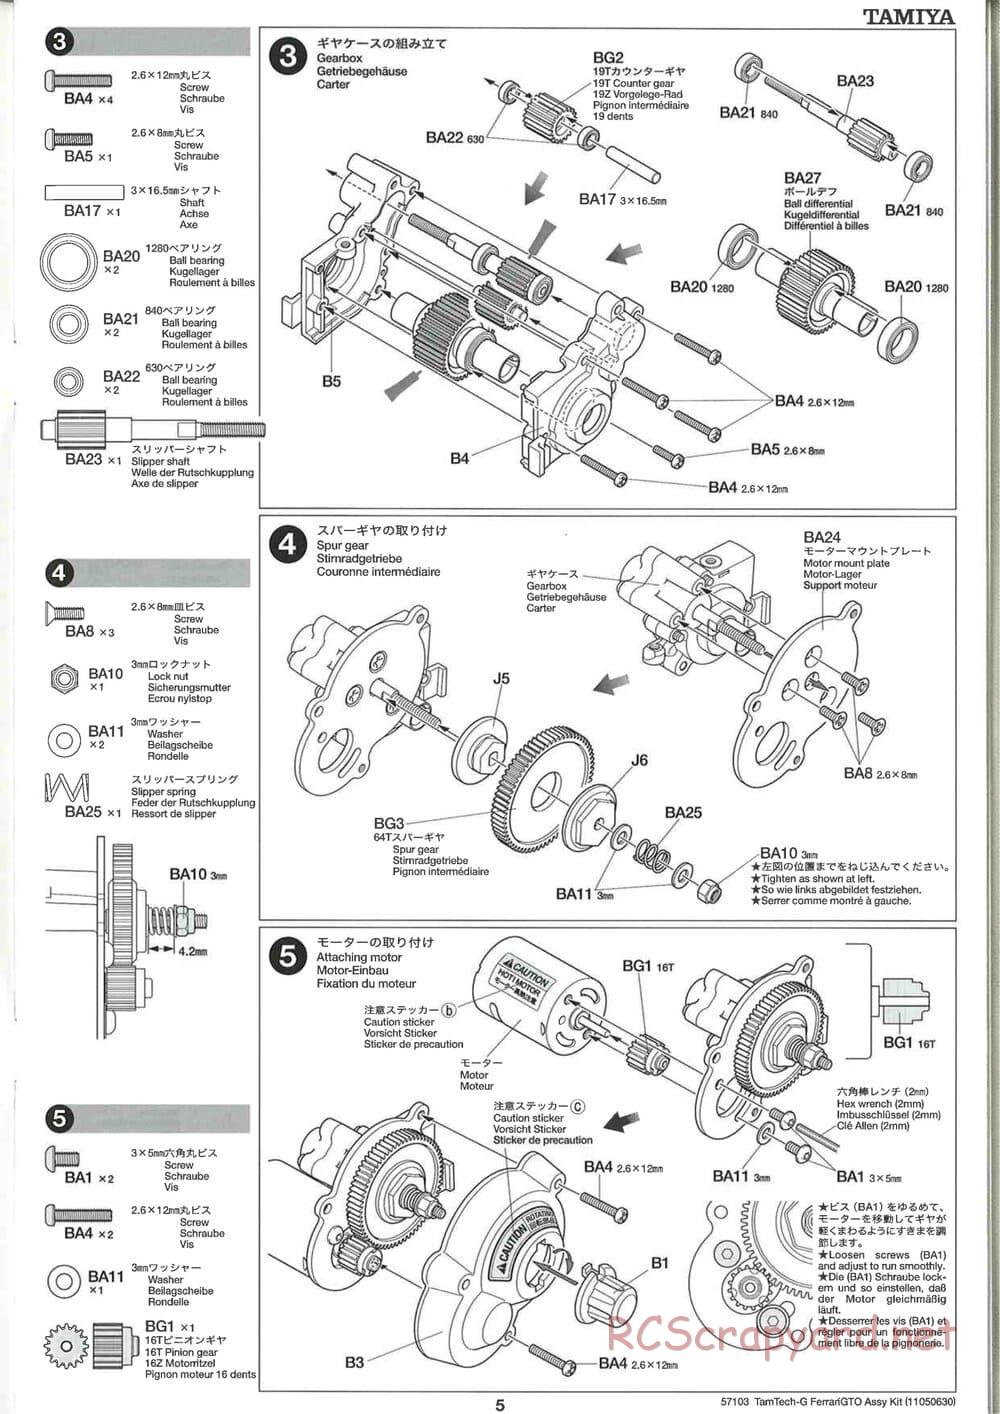 Tamiya - Ferrari 288 GTO - GT-01 Chassis - Manual - Page 5